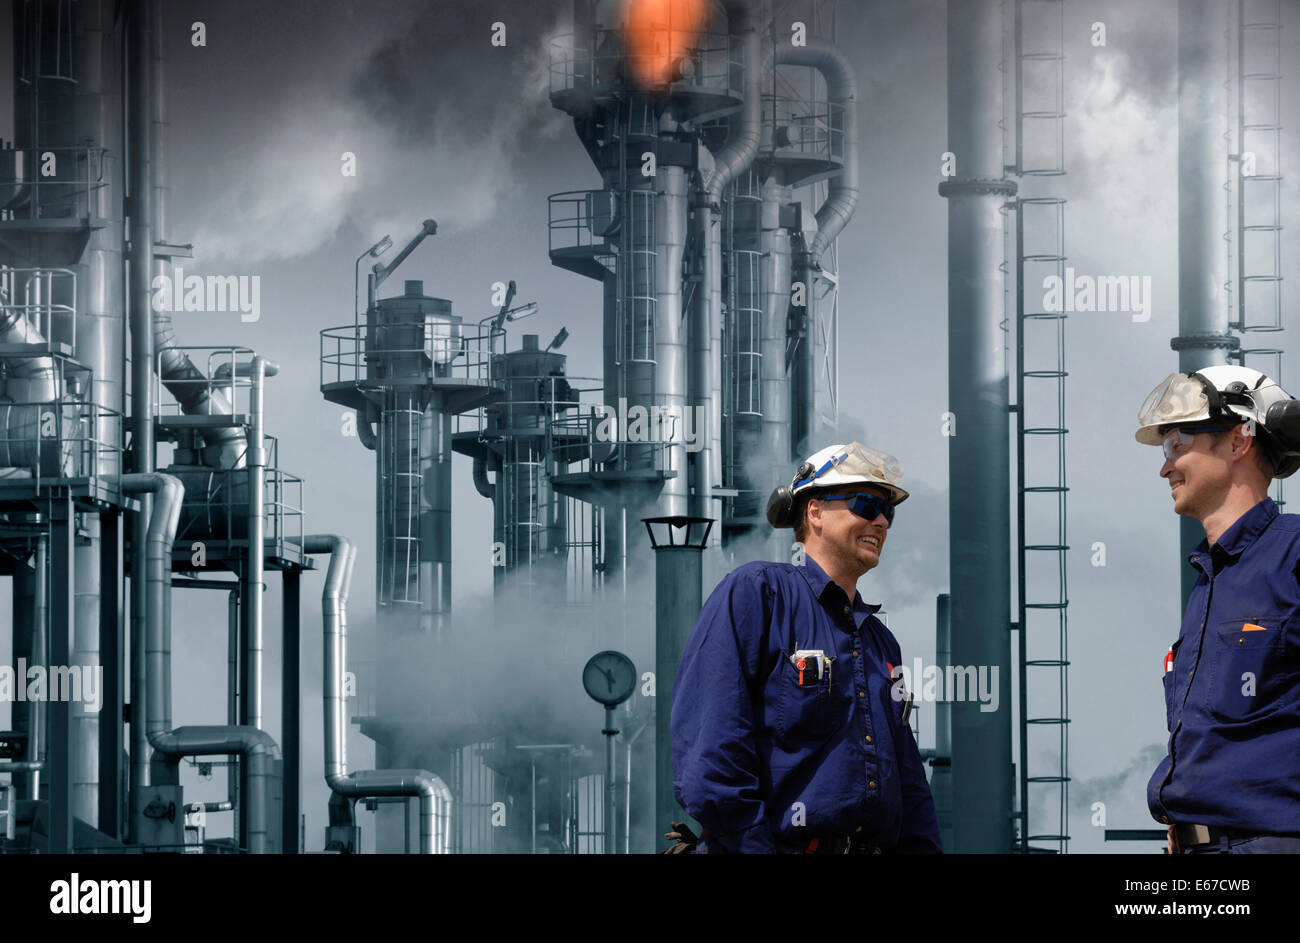 Öl-Raffinerie und Arbeiter, riesige Flammen und Feuer Stockfoto